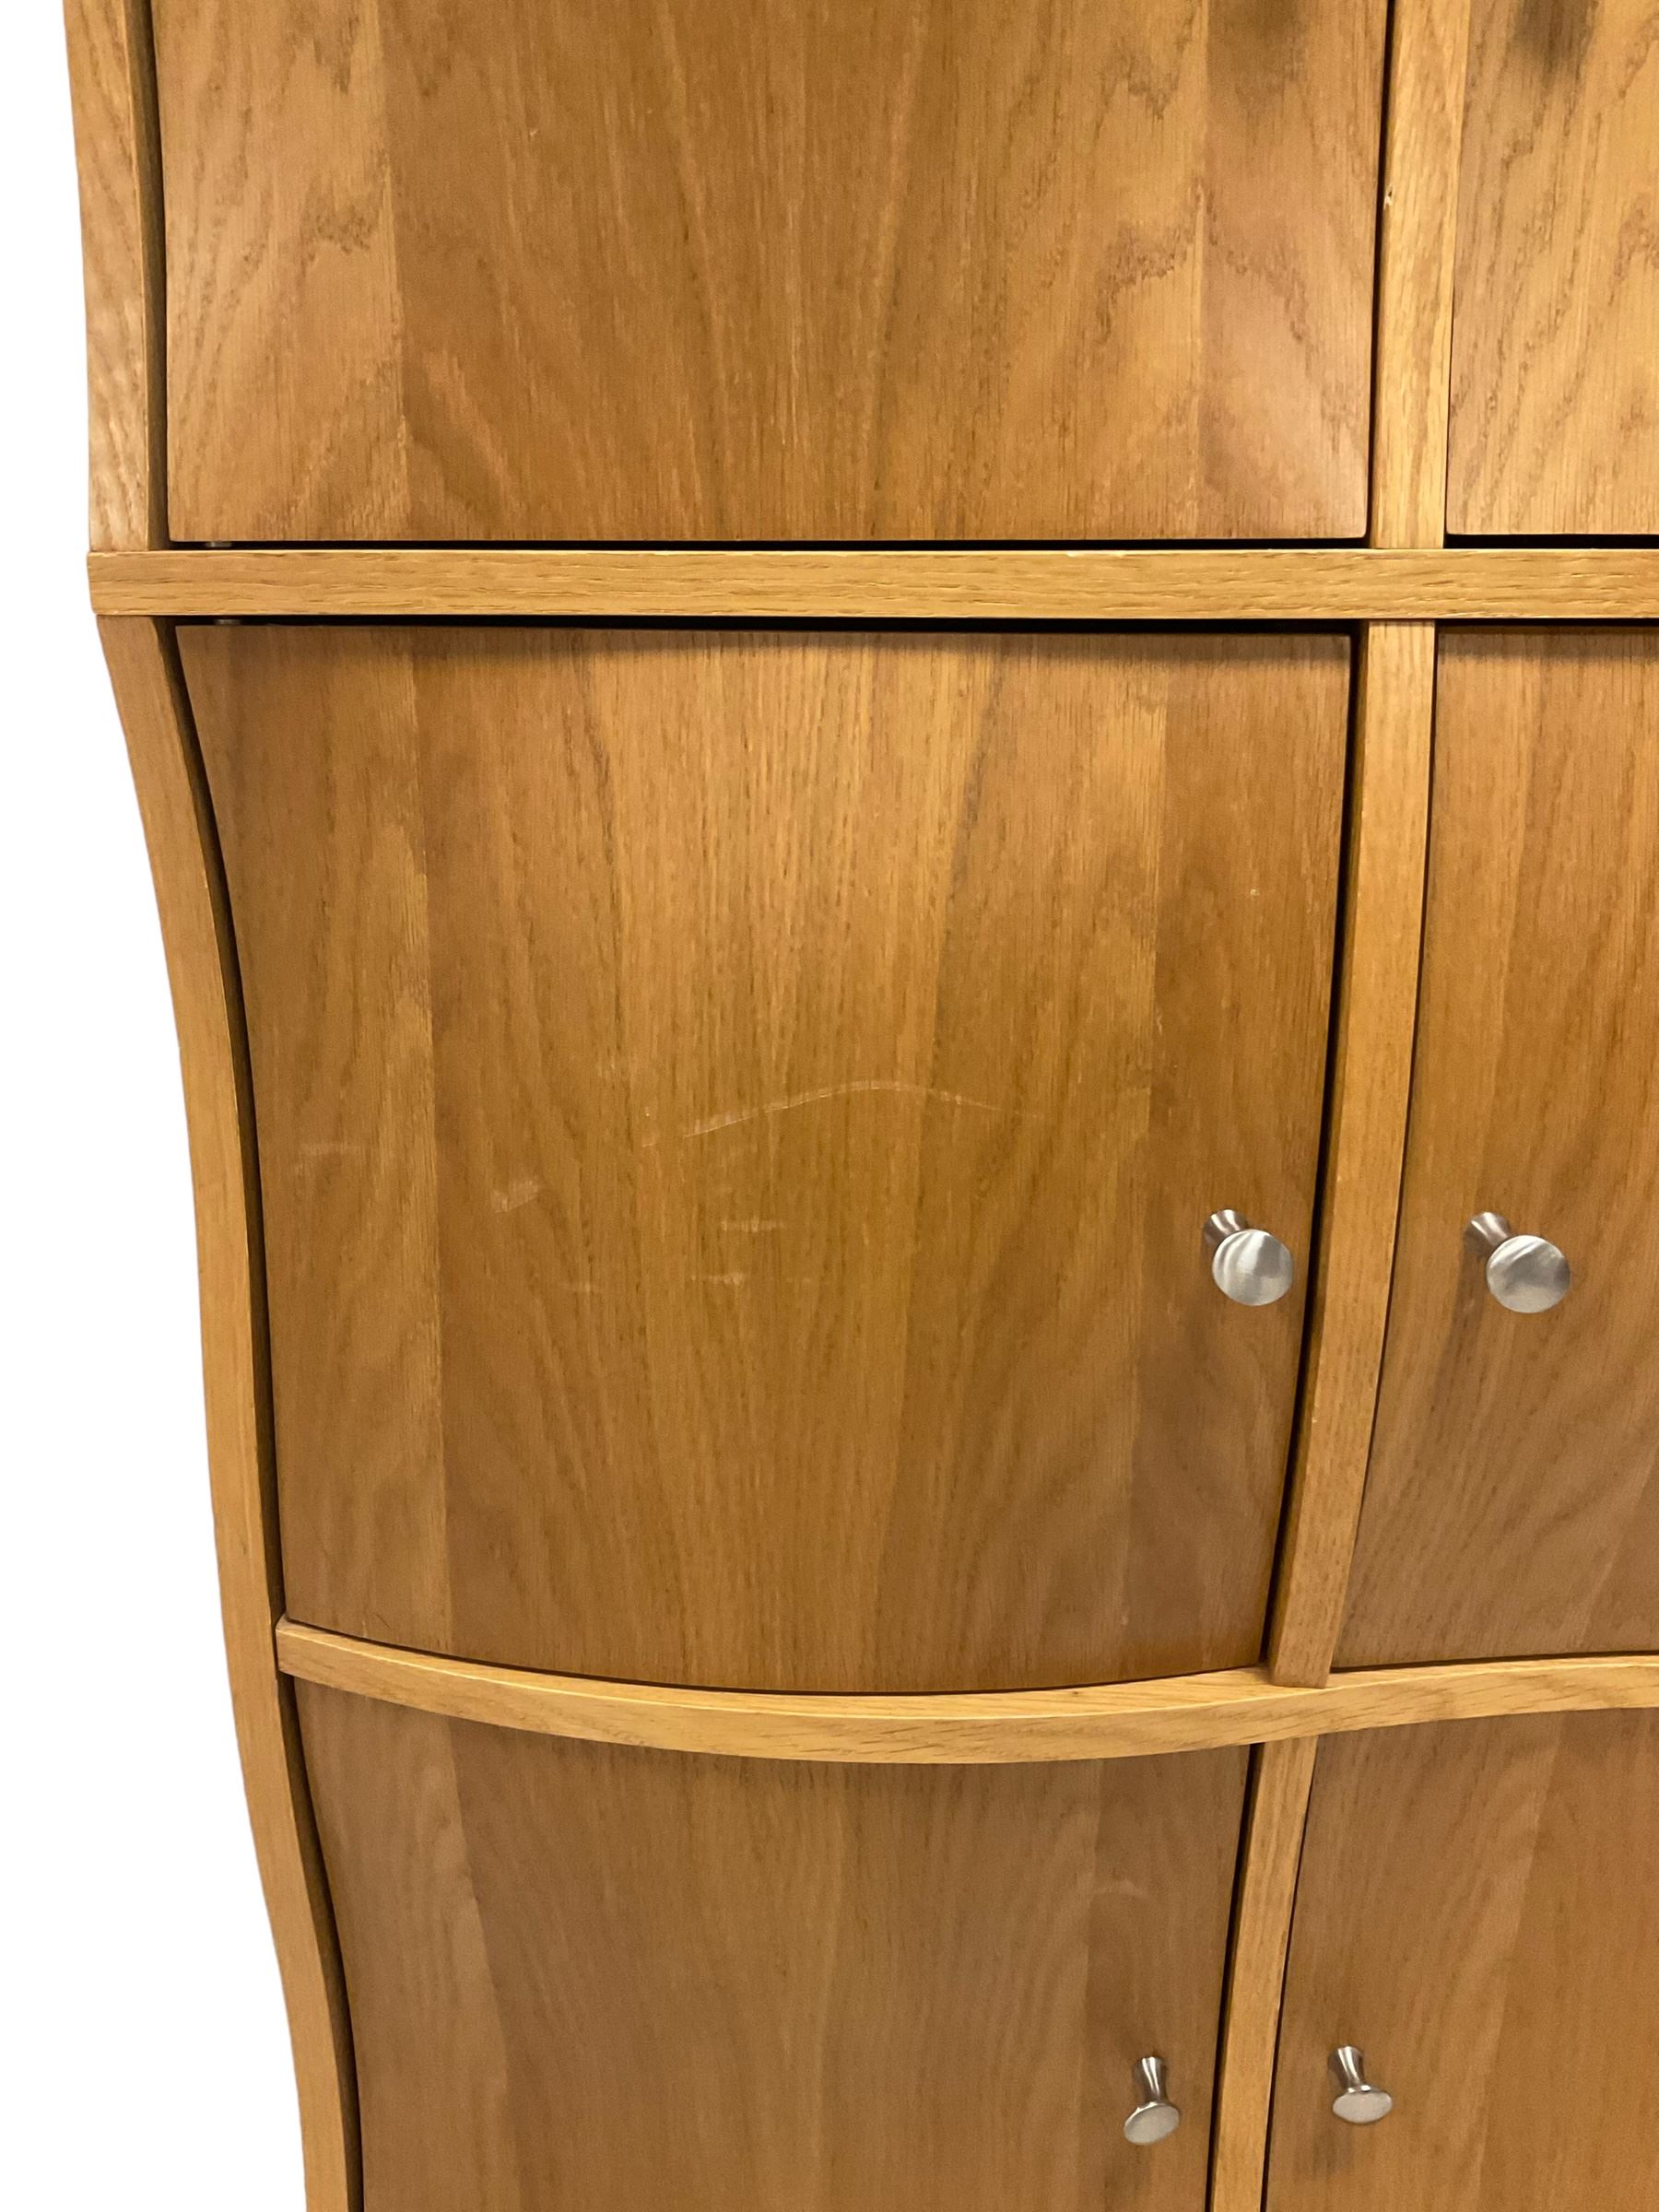 Contemporary oak wavy door cupboard - Image 5 of 6